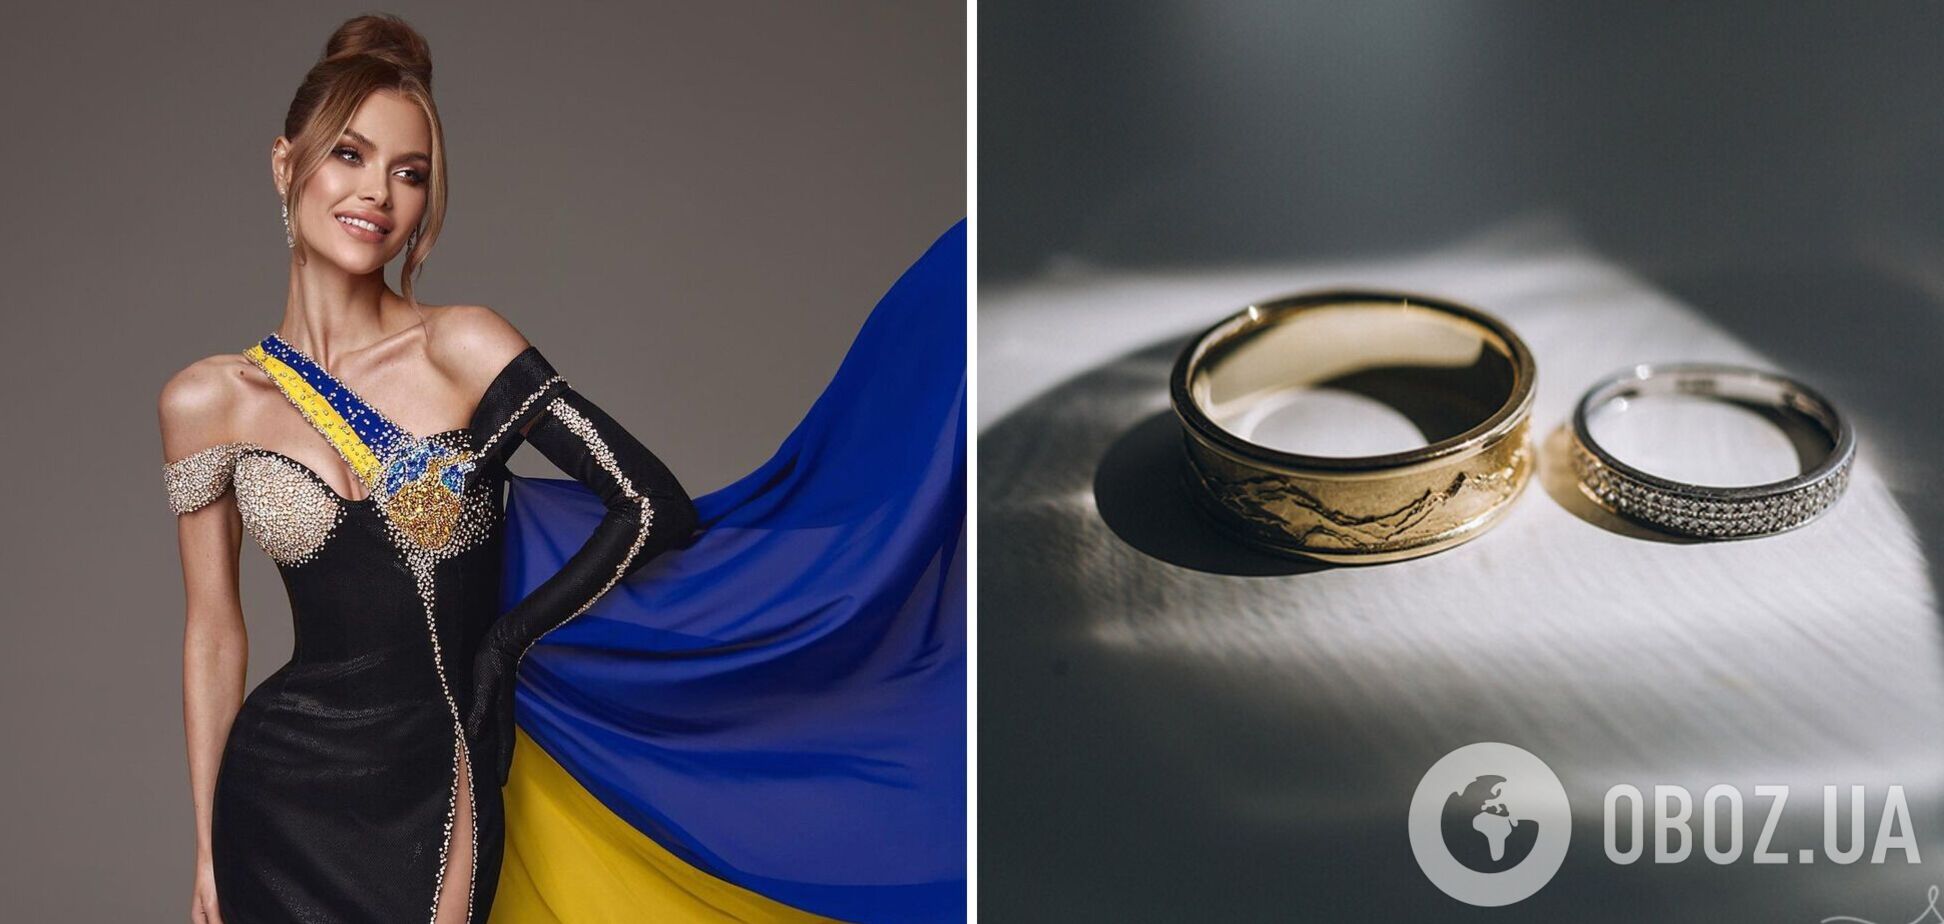 'Міс Україна Всесвіт' Вікторія Апанасенко вийшла заміж. Фото